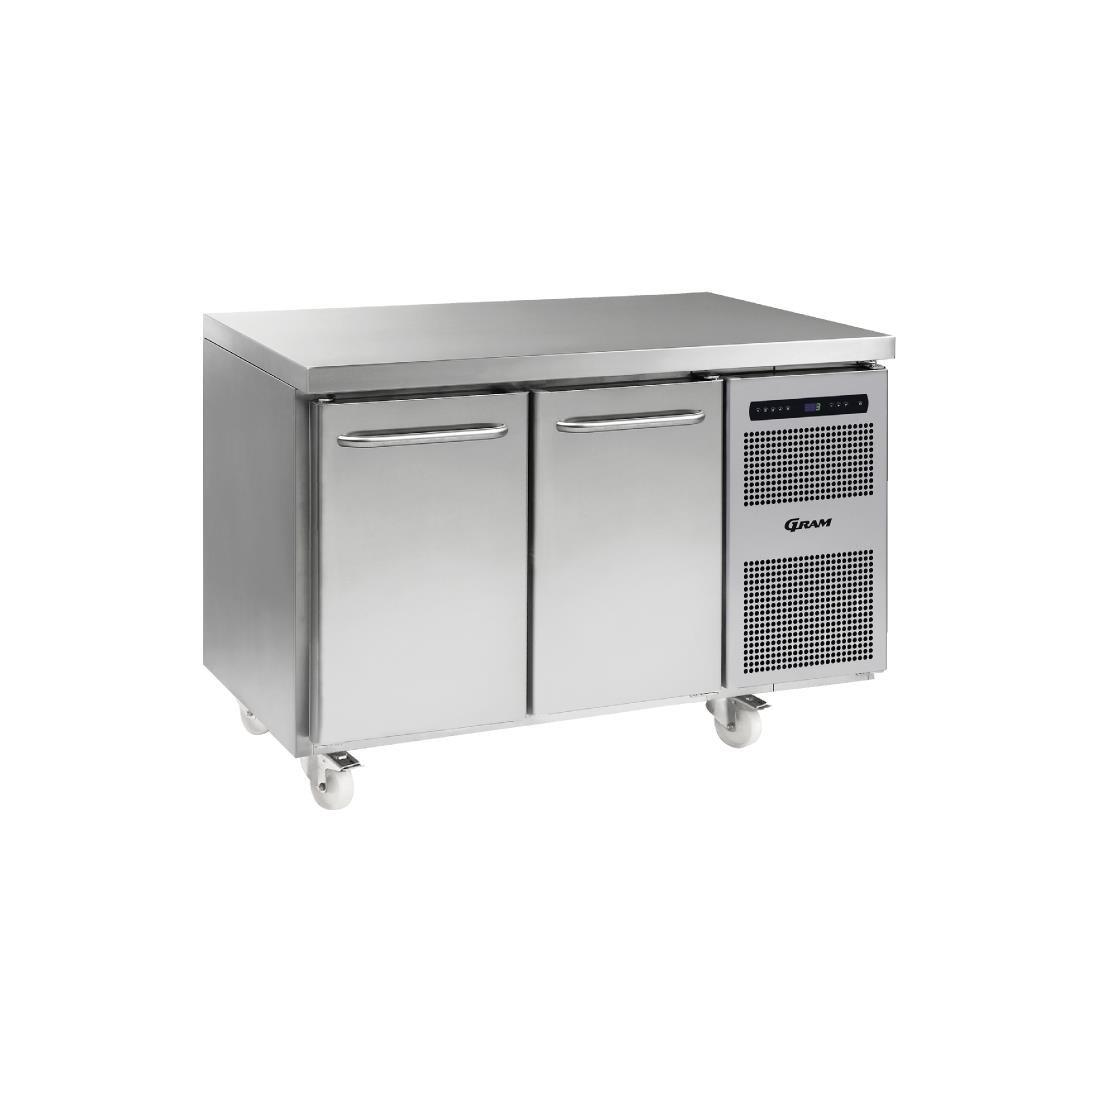 Y384 - Gram Gastronorm Counter Refrigerator